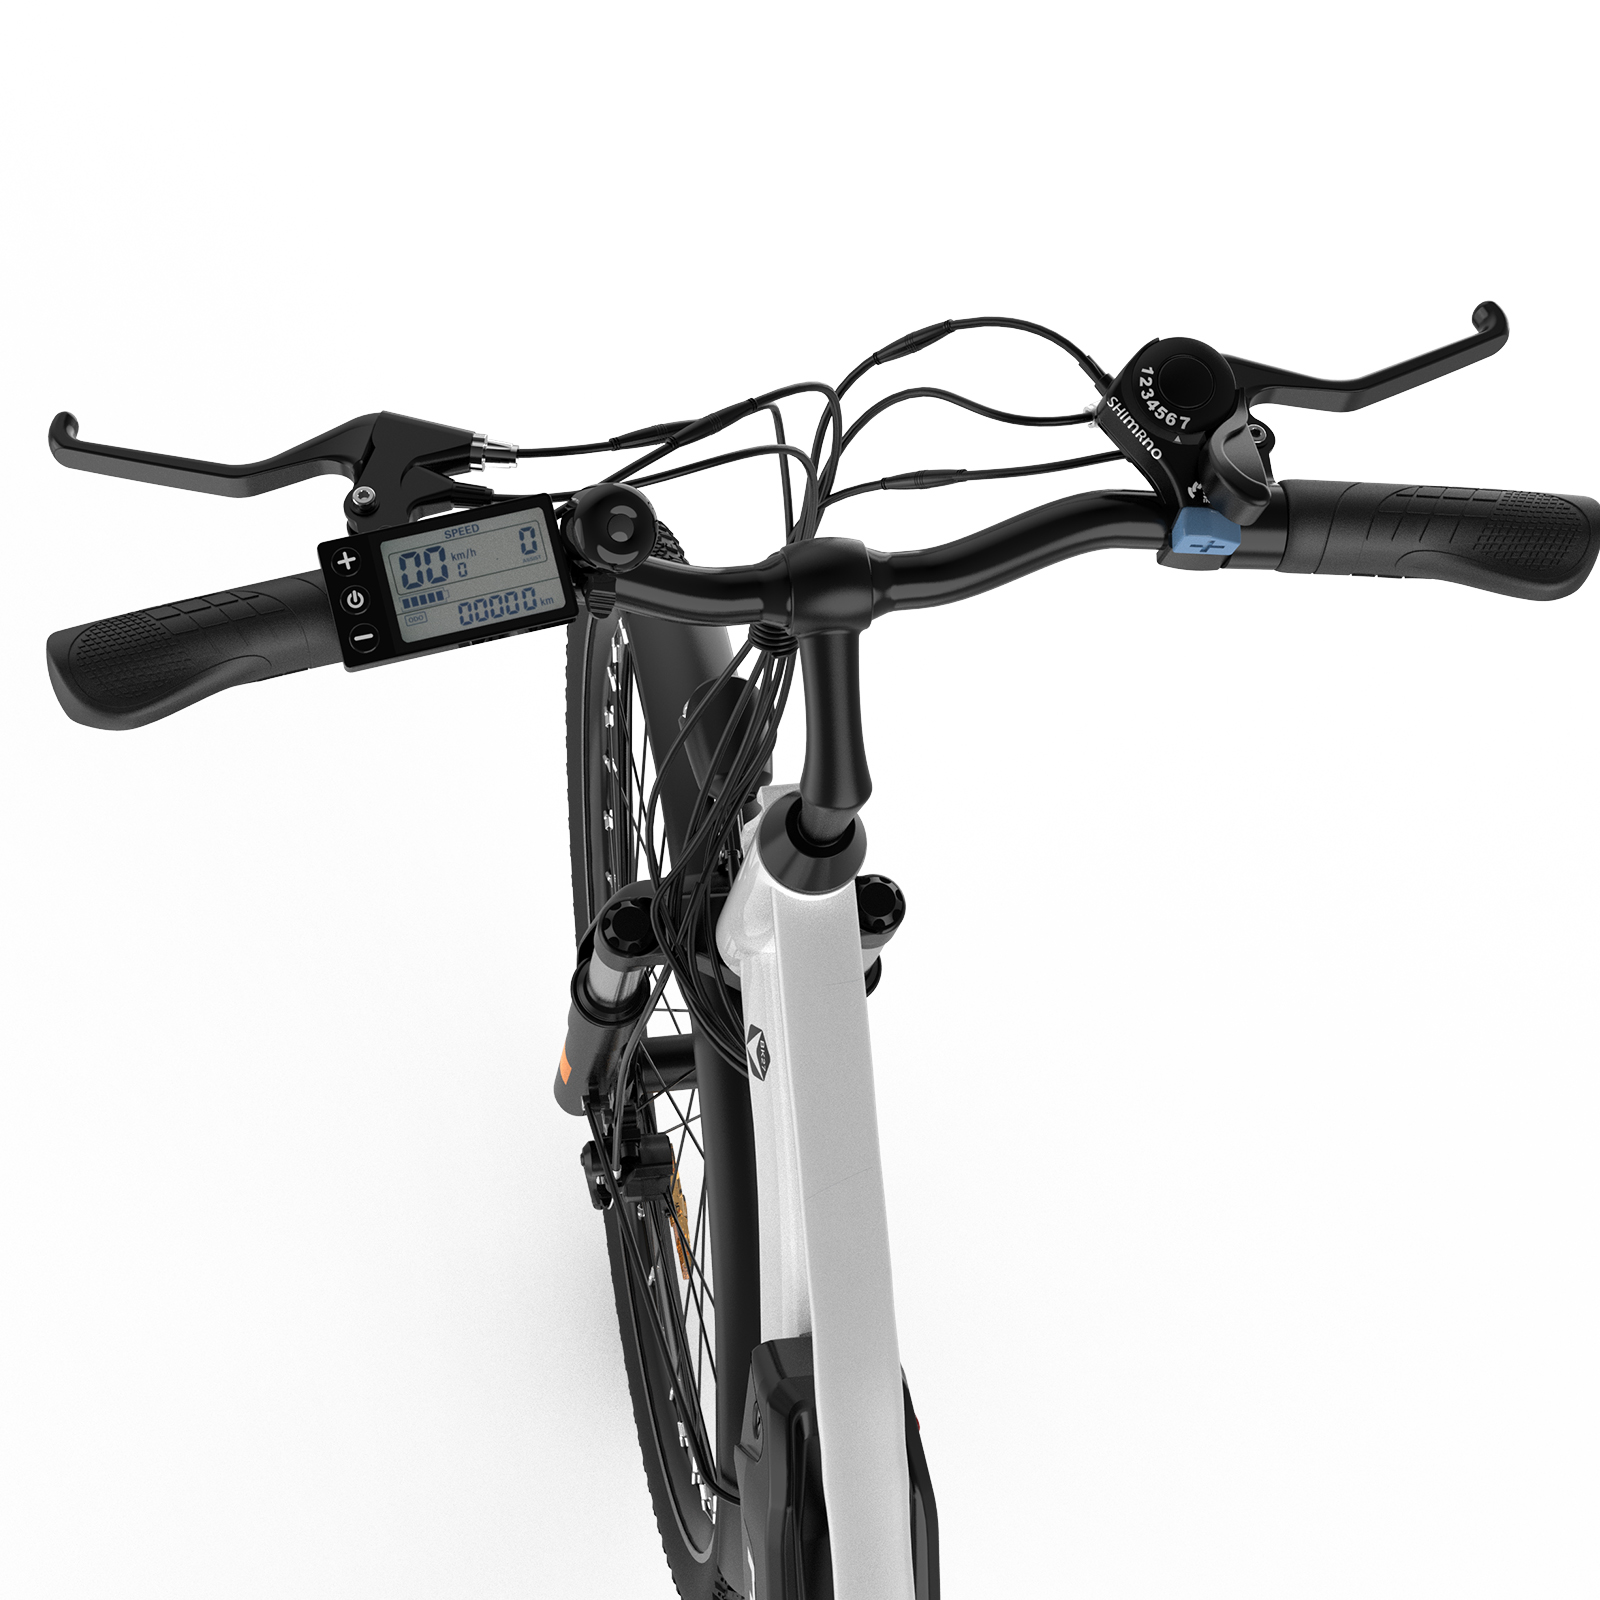 432, BK27 (Laufradgröße: 28 Zoll, Weiß) Unisex-Rad, Mountainbike HITWAY